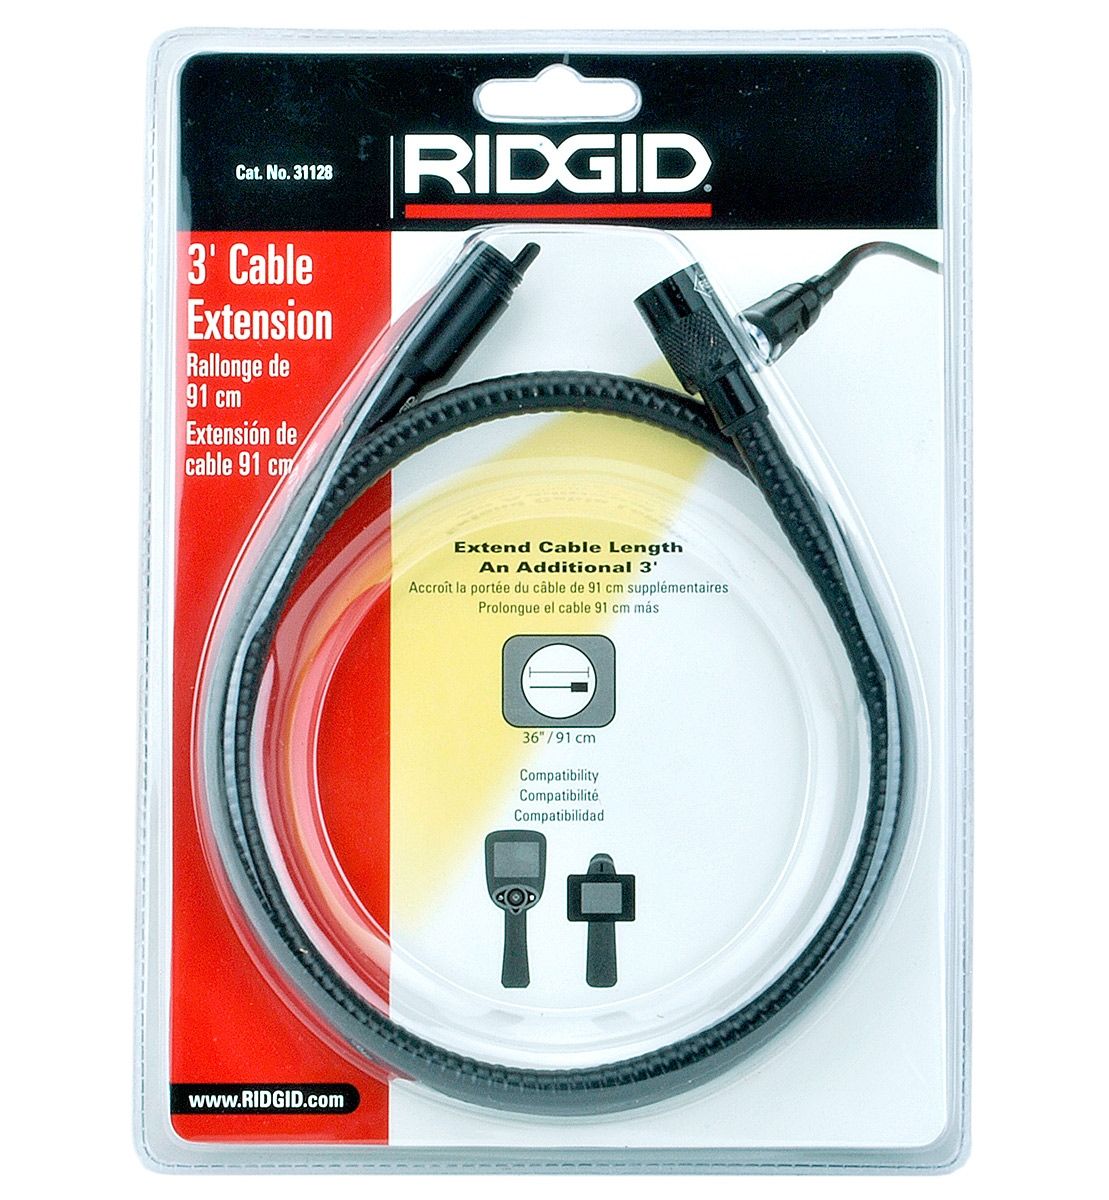 RIDGID 31128 Micro CA300 Dijital Gözlem Kamera 90 cm Kablo uzatması